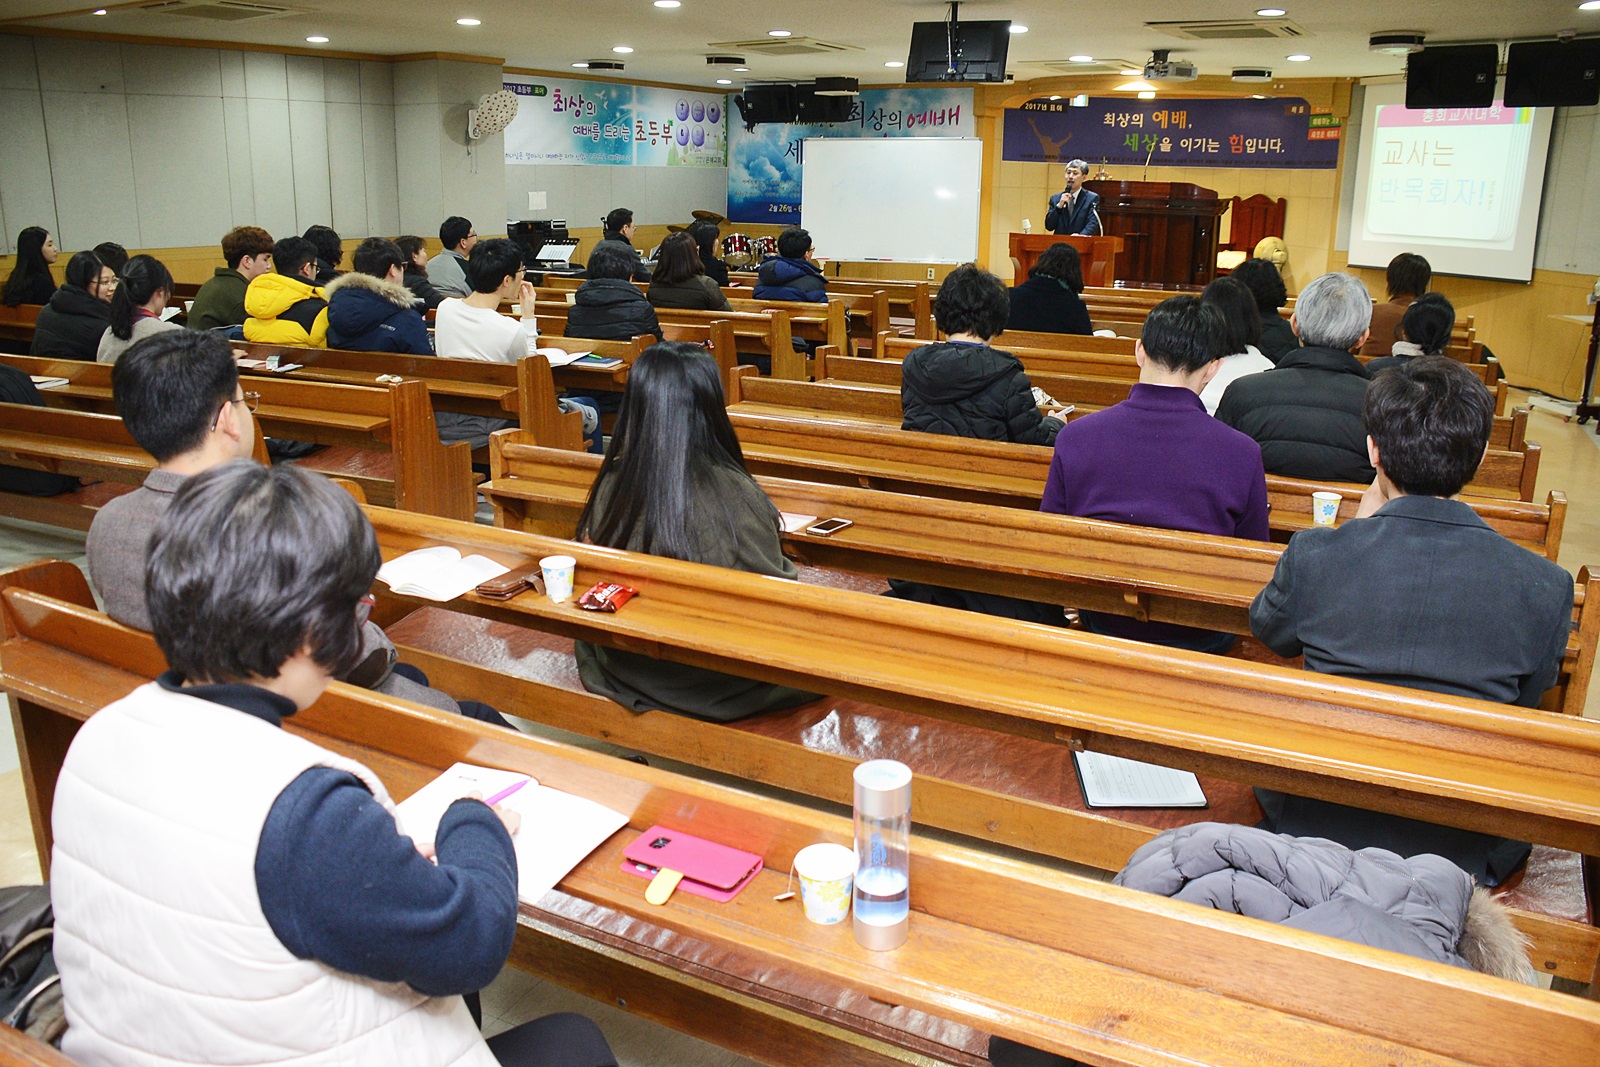 ▲ 3월 6일 서울 은혜교회당에서 열린 총회 교사대학, 성경대학 세미나에서 박신웅 목사가 강의하고 있다.